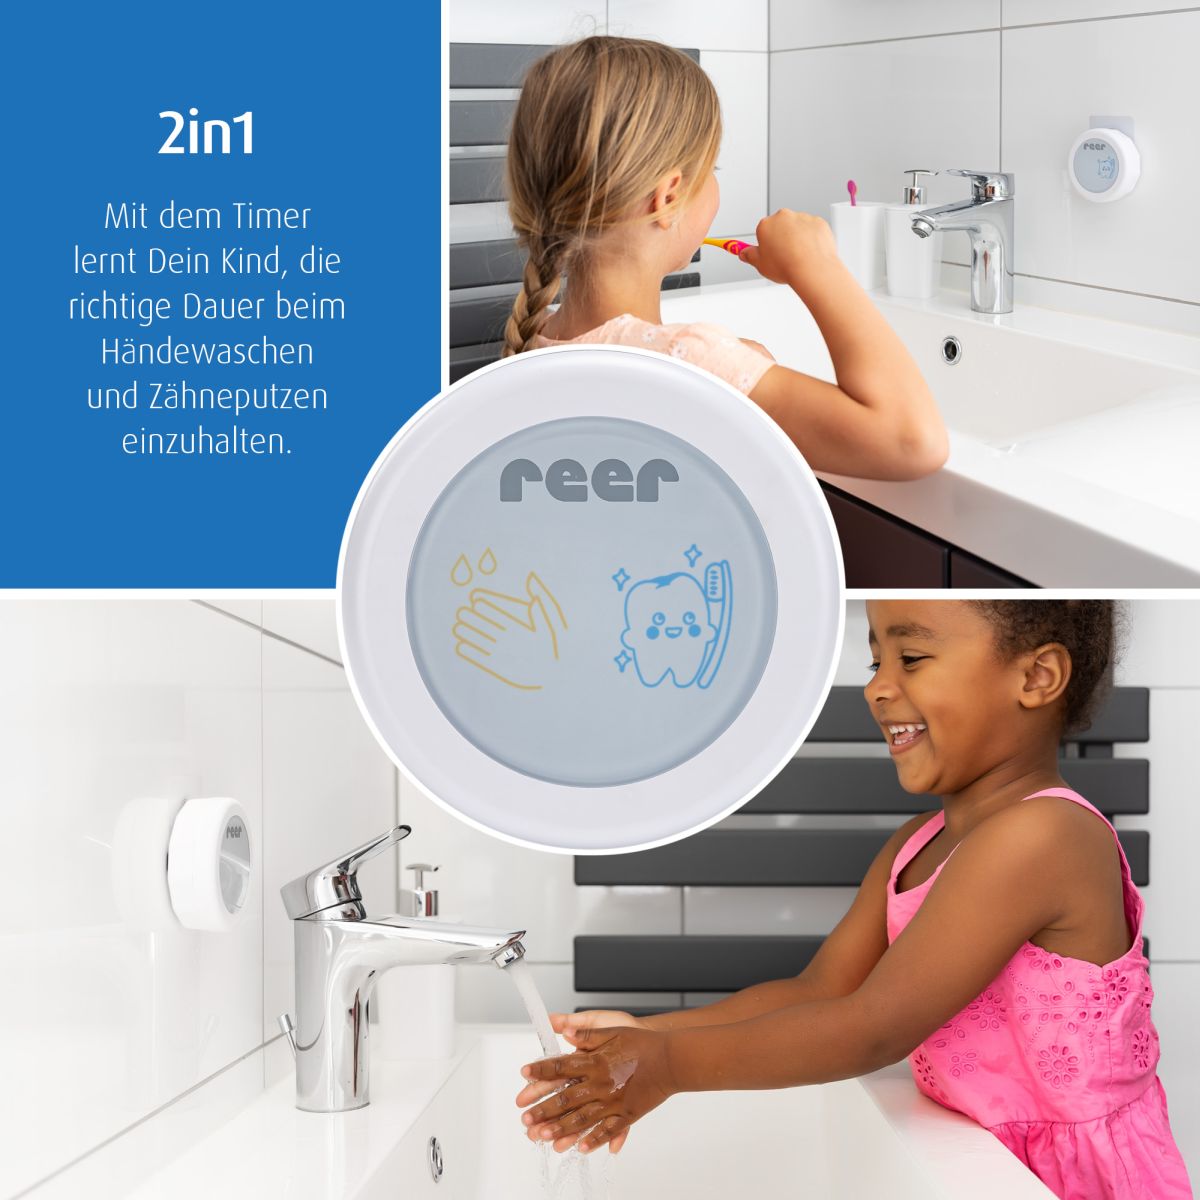 2in1 Handwasch- und Zahnputz-Timer